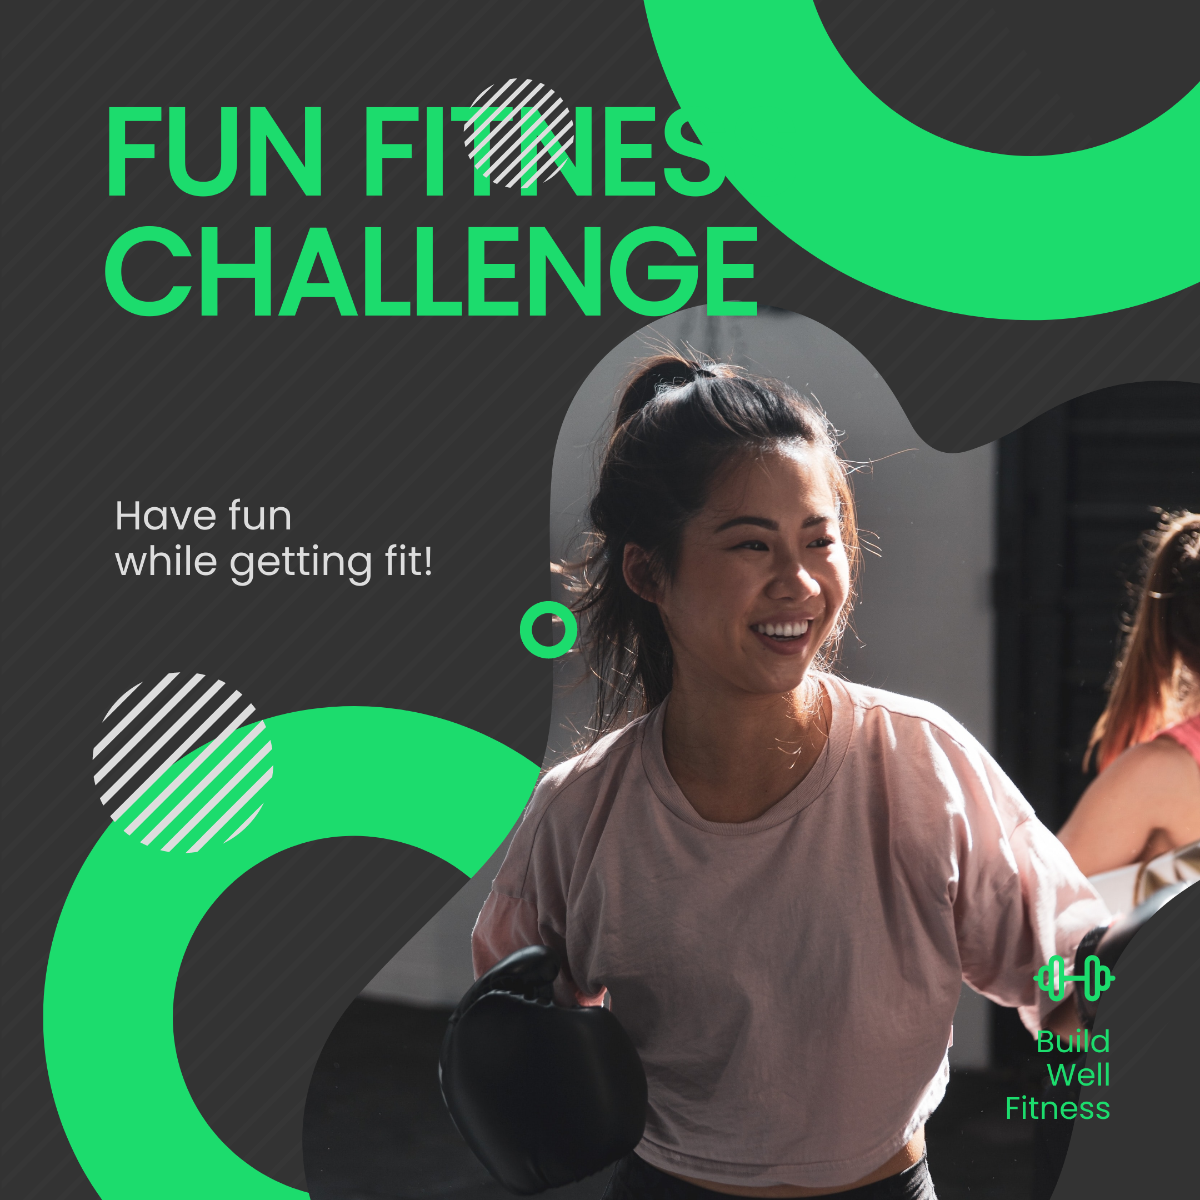 Fun Fitness Challenge Post, Instagram, Facebook